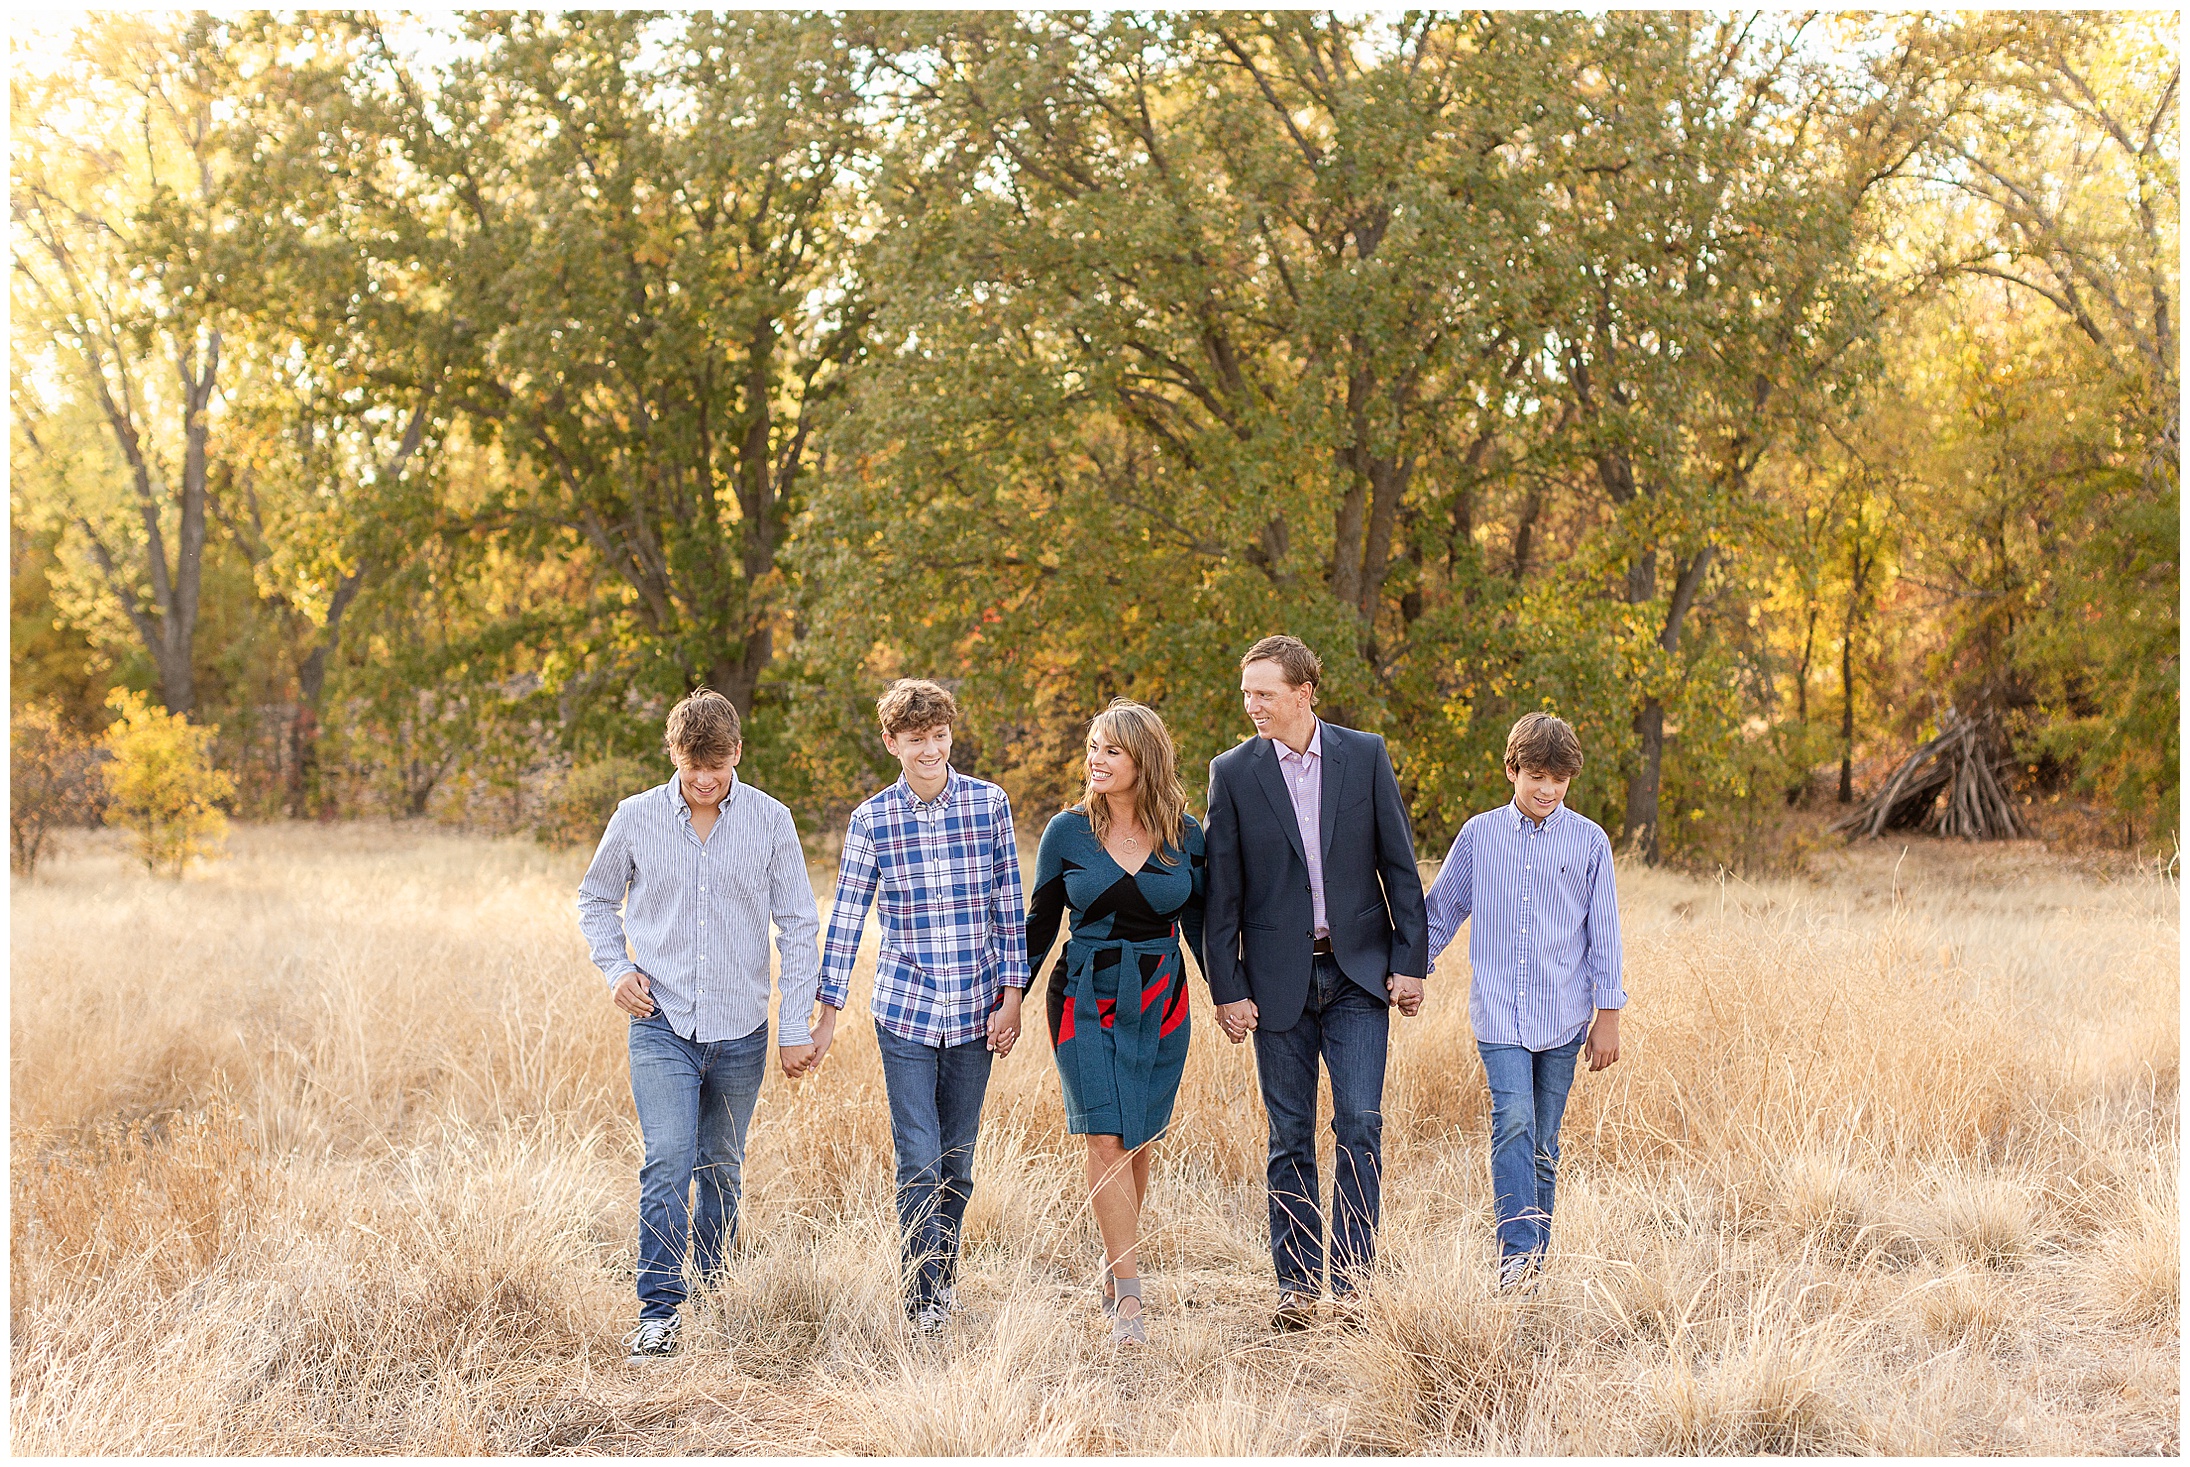 Family Walk in Grass Field | Kristi + Todd